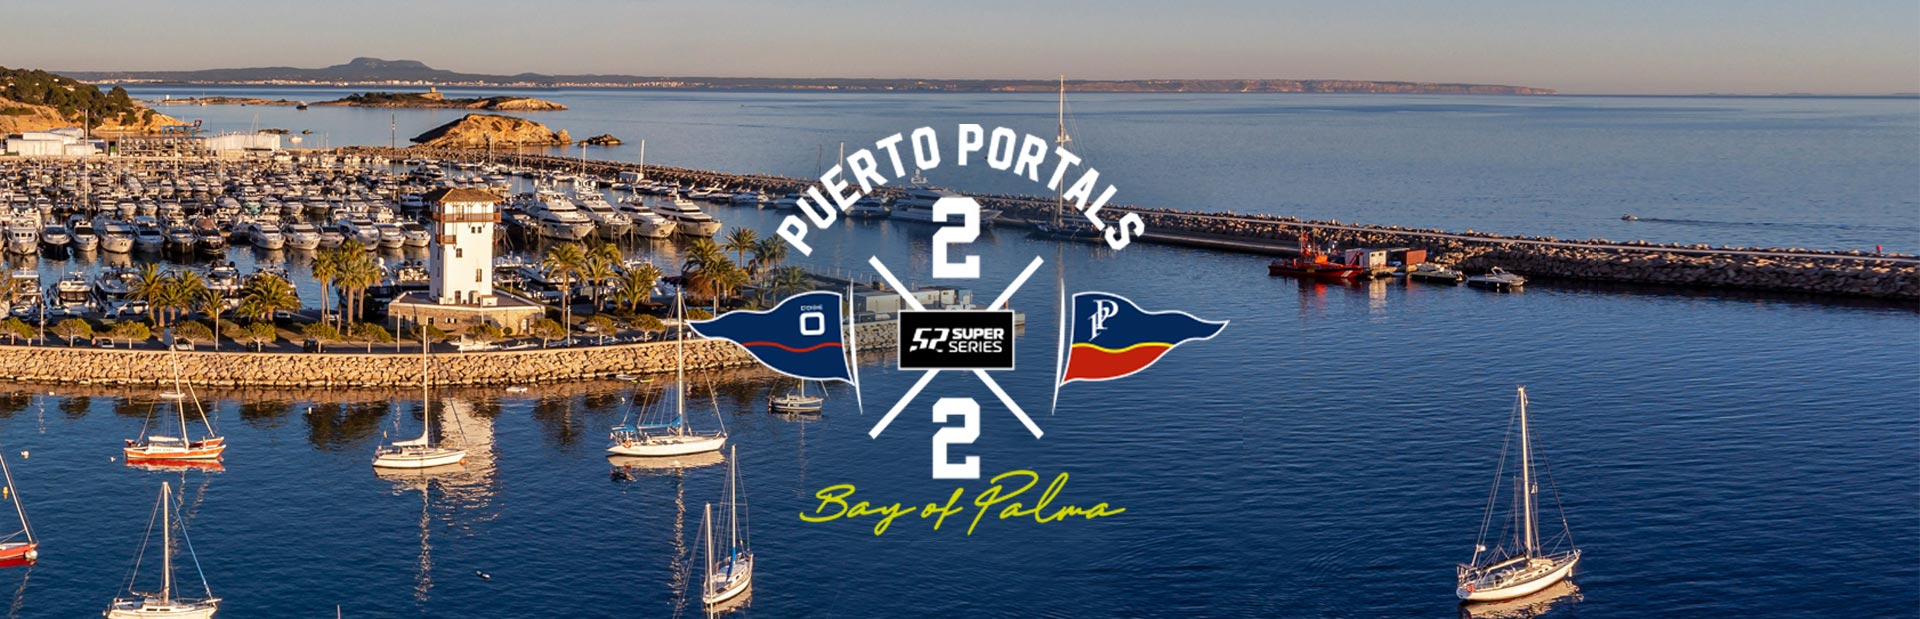 dames-polo-porto-portales-port